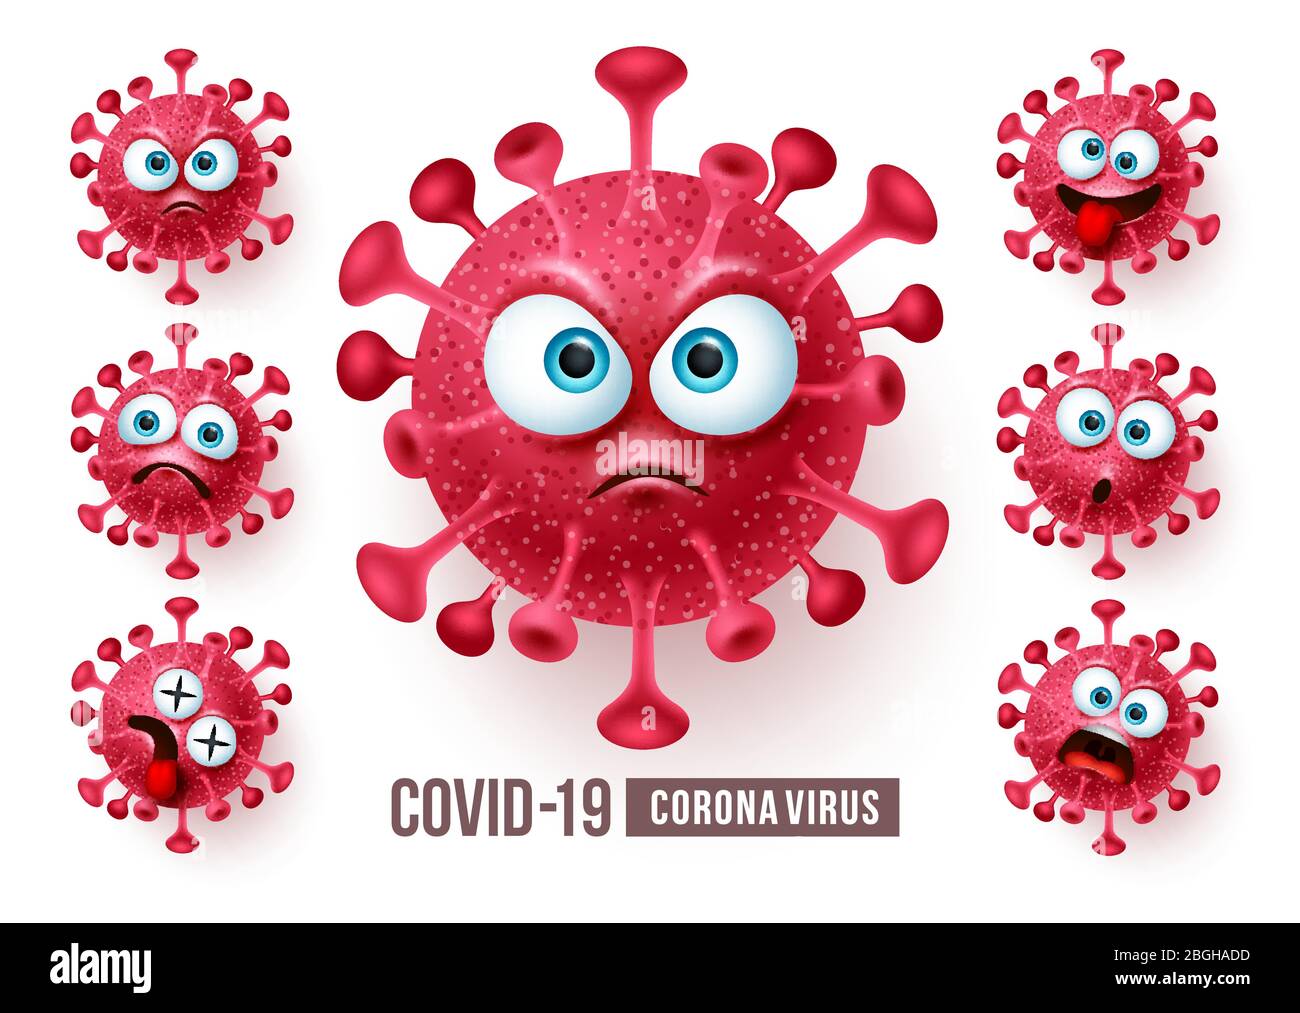 Corona Virus covid19 Emoji-Vektor-Set. Covid19 Corona Virus Emojis und Emoticons mit wütenden und beängstigenden Gesichtern für globale Pandemie Ausbruch. Stock Vektor